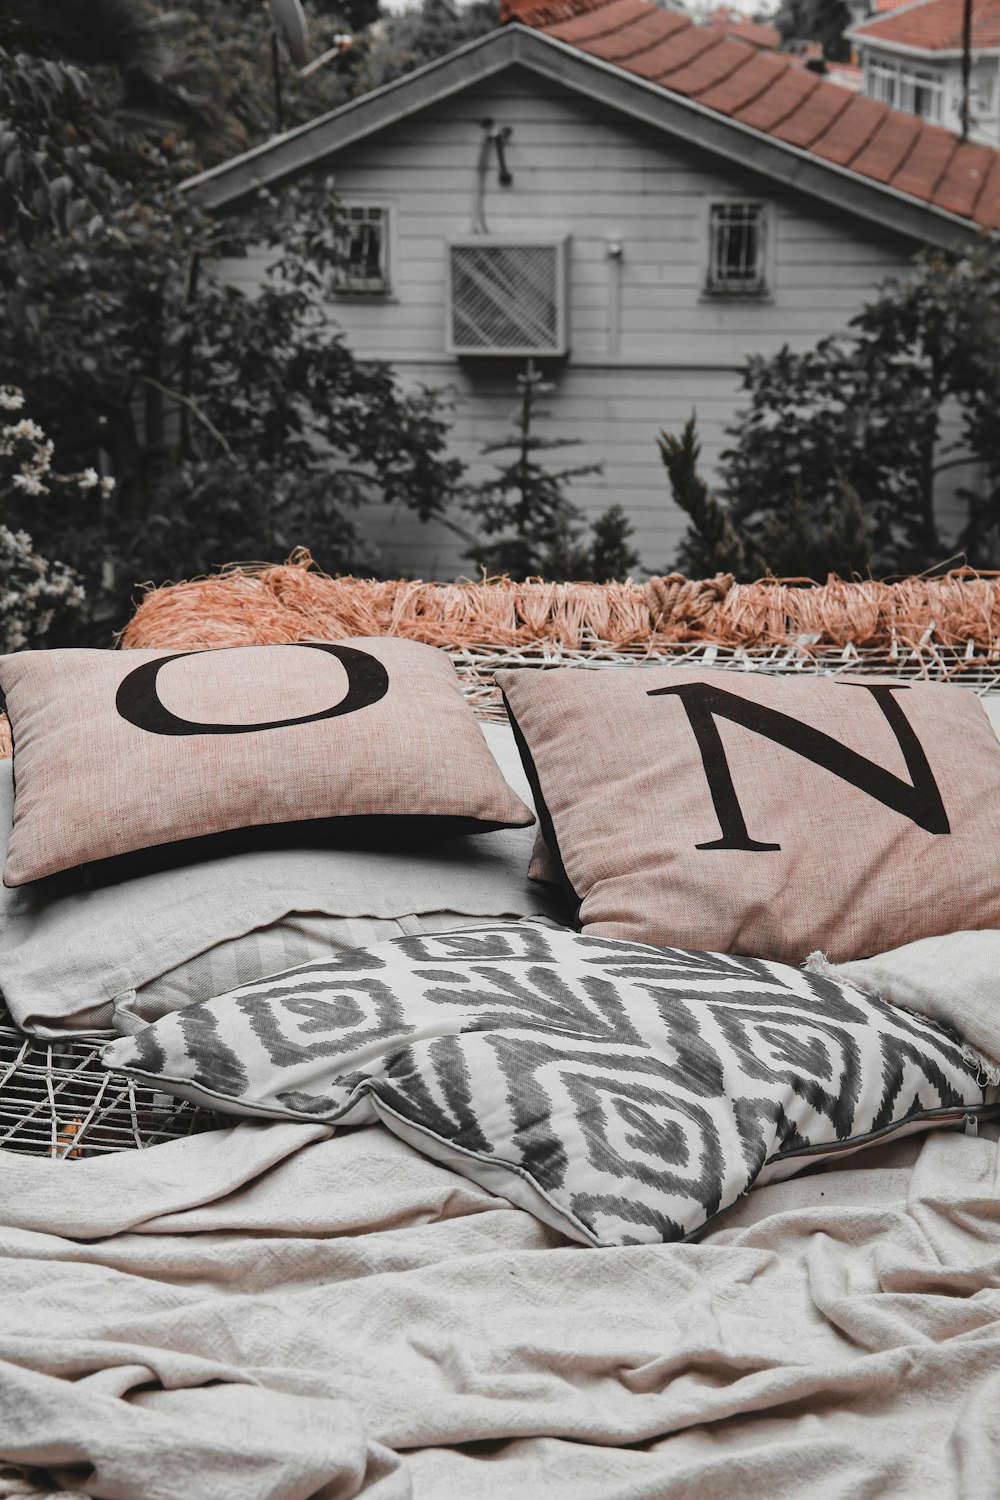 Foto zum Thema Zwei rosa Kissen auf dem Bett – Kostenloses Bild zu Kissen  auf Unsplash